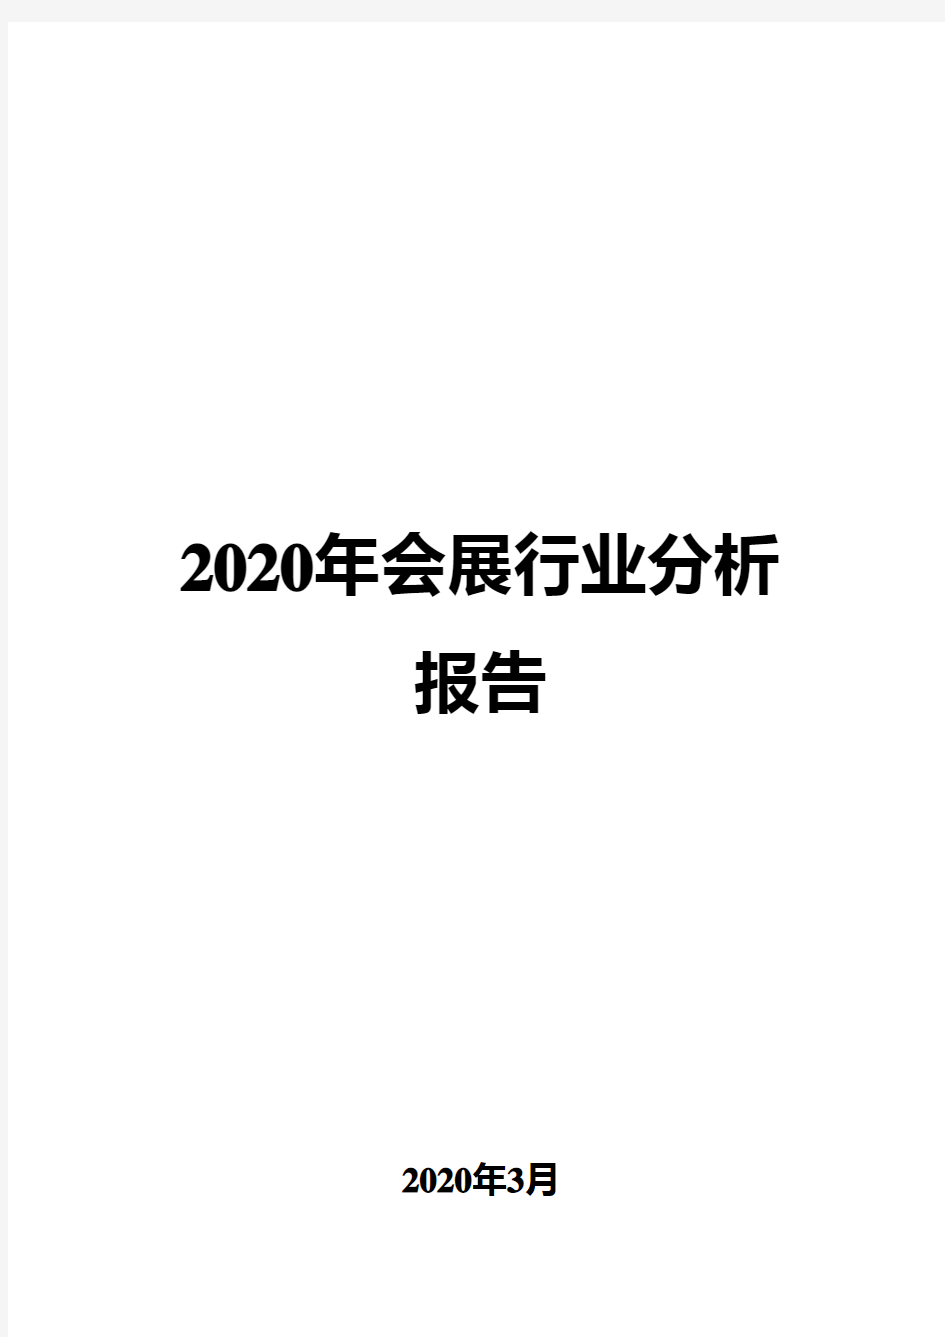 2020年会展行业分析报告